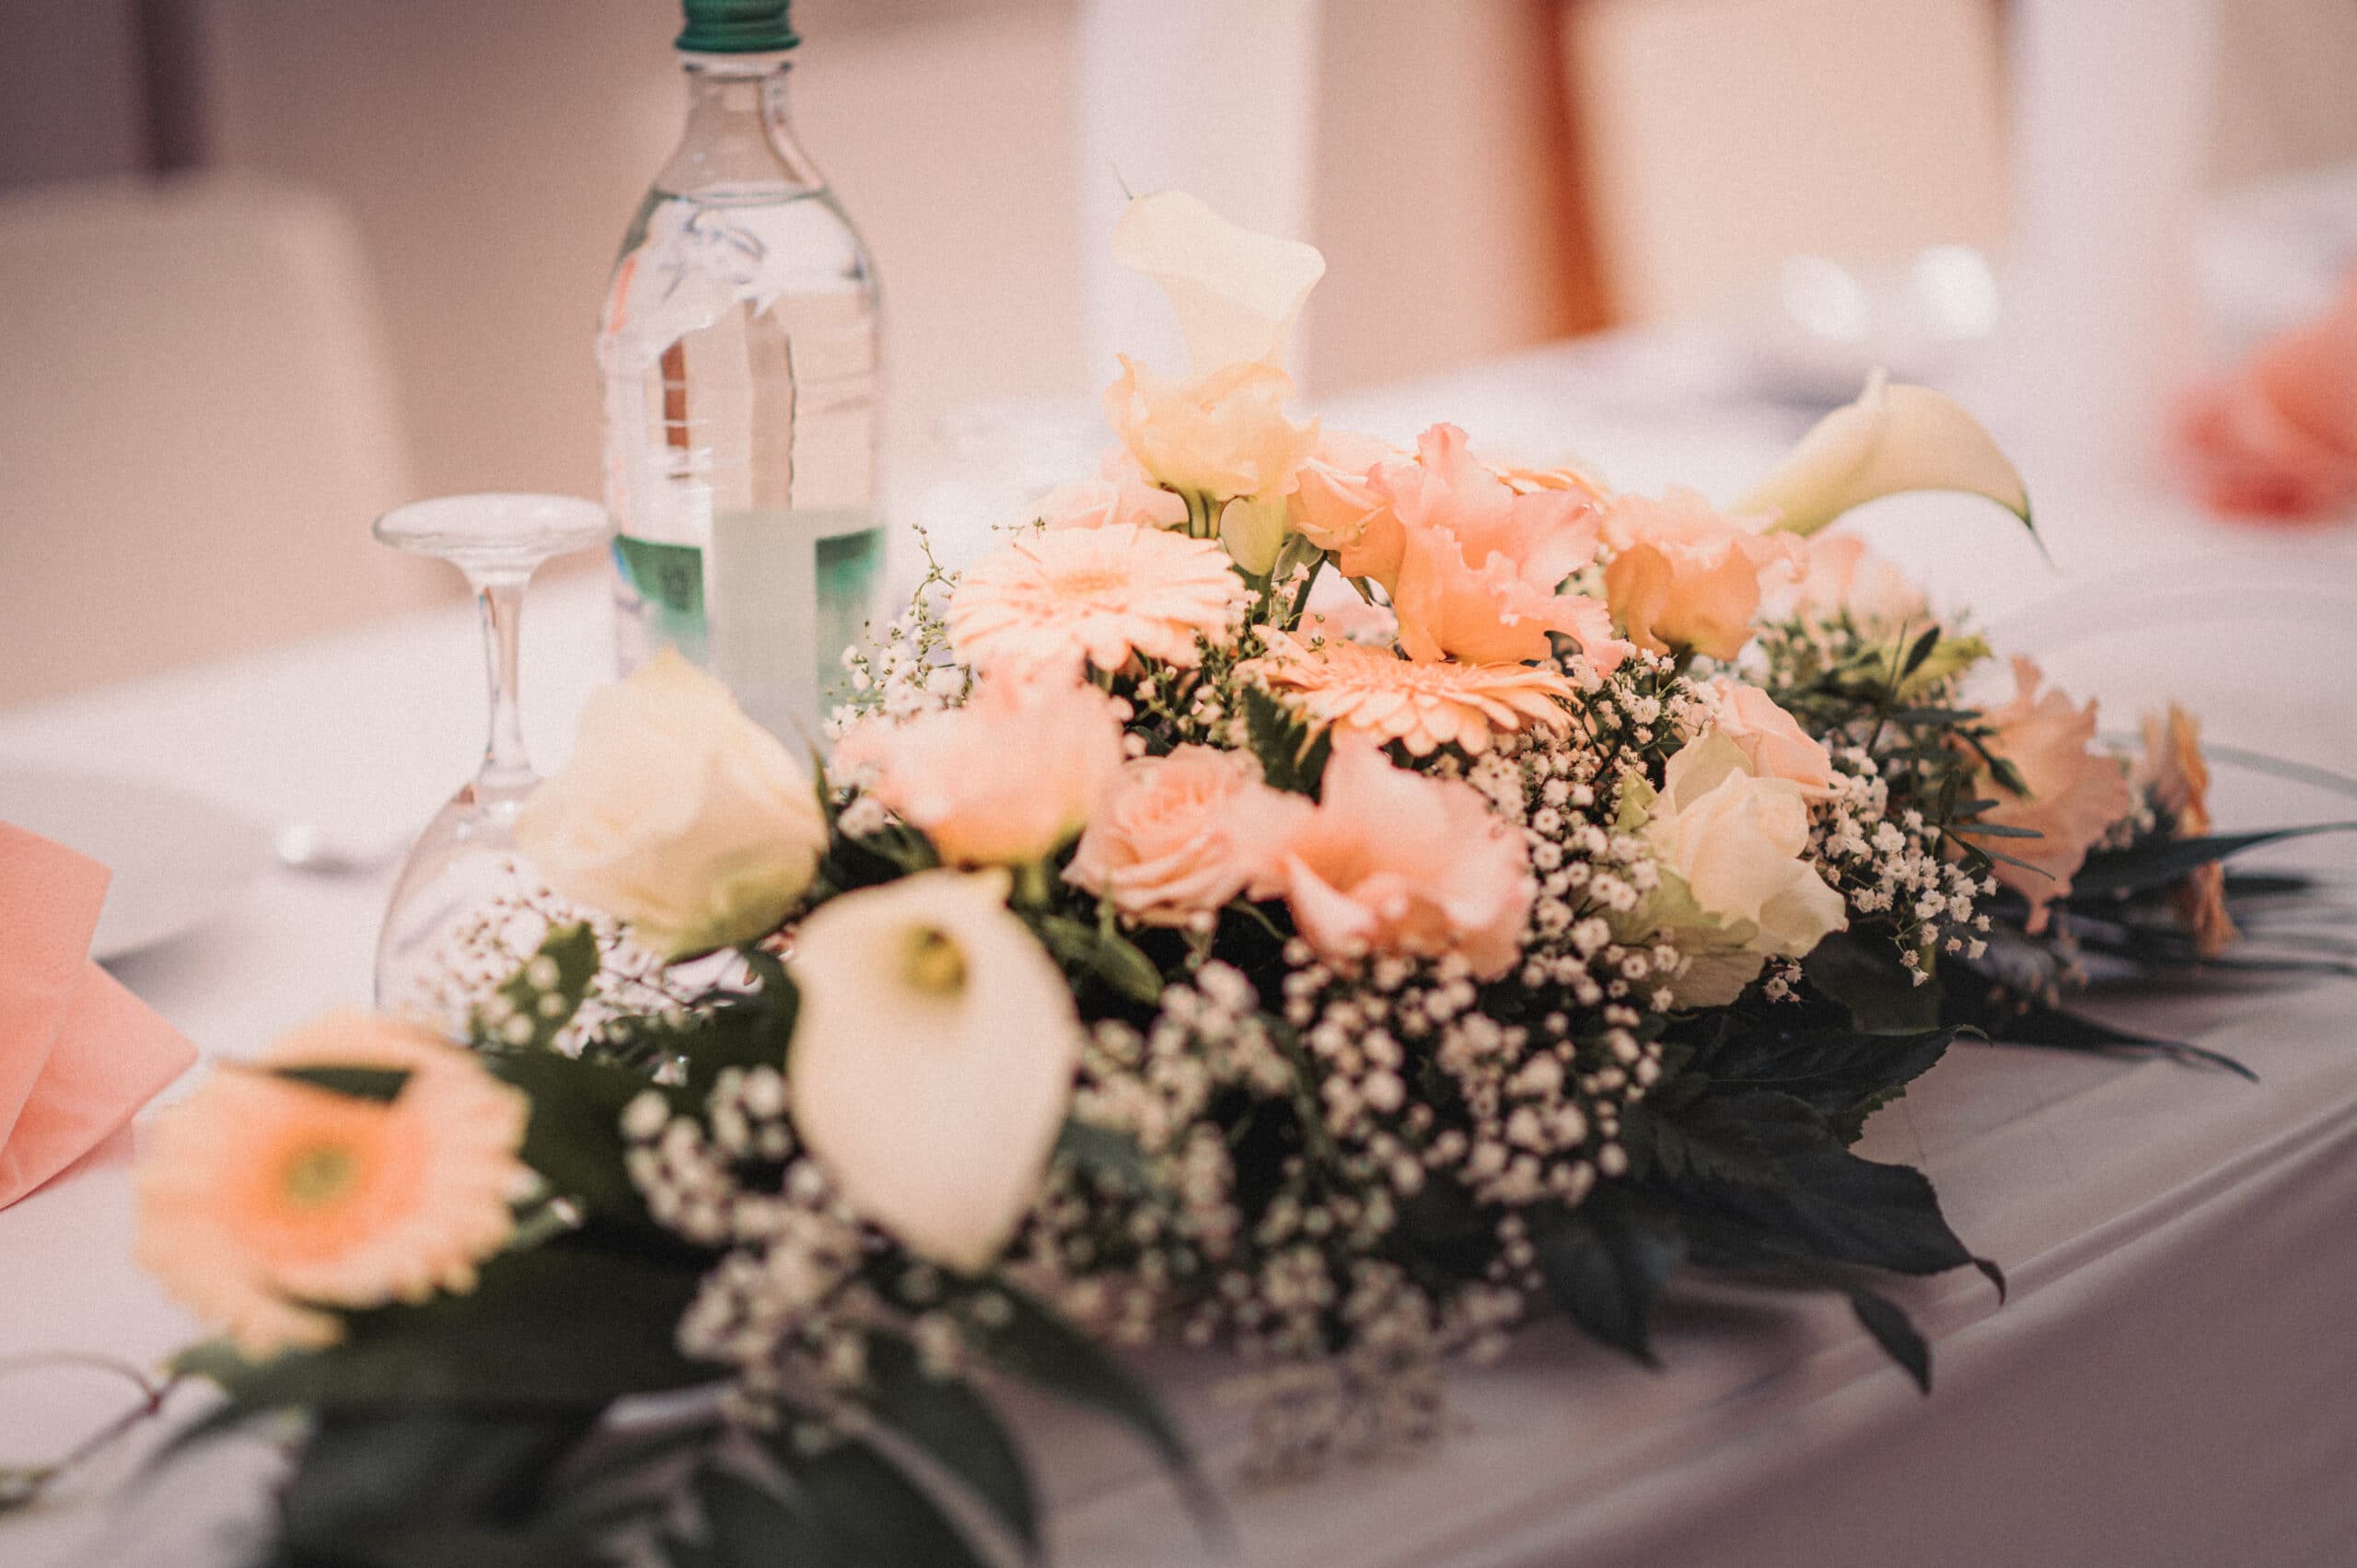 Der Blumenschmuck auf den Tischen von der Hochzeit.